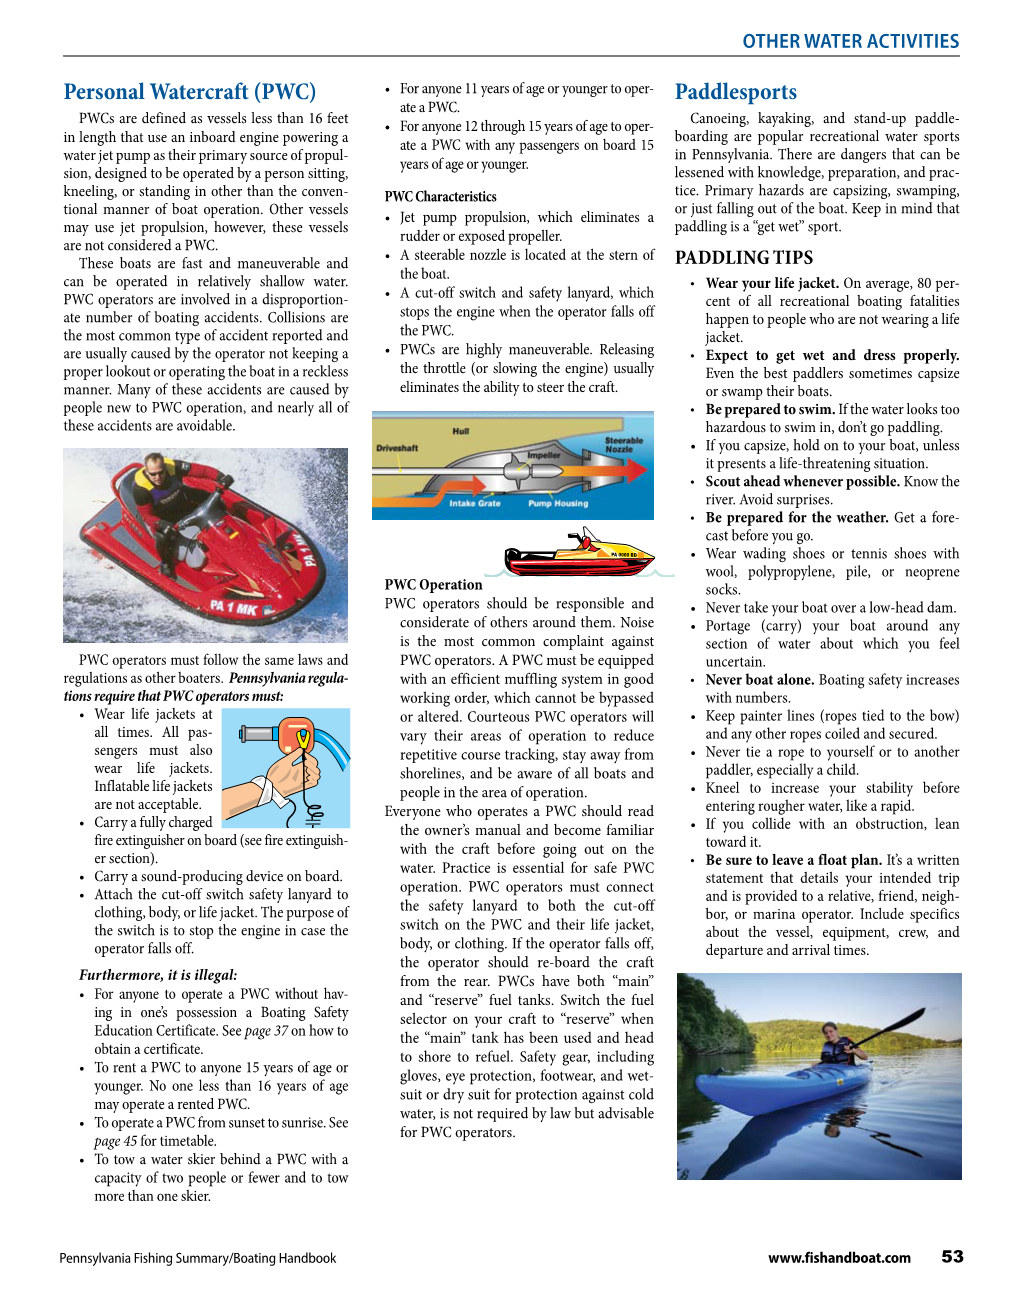 Paddlesports Personal Watercraft (PWC)